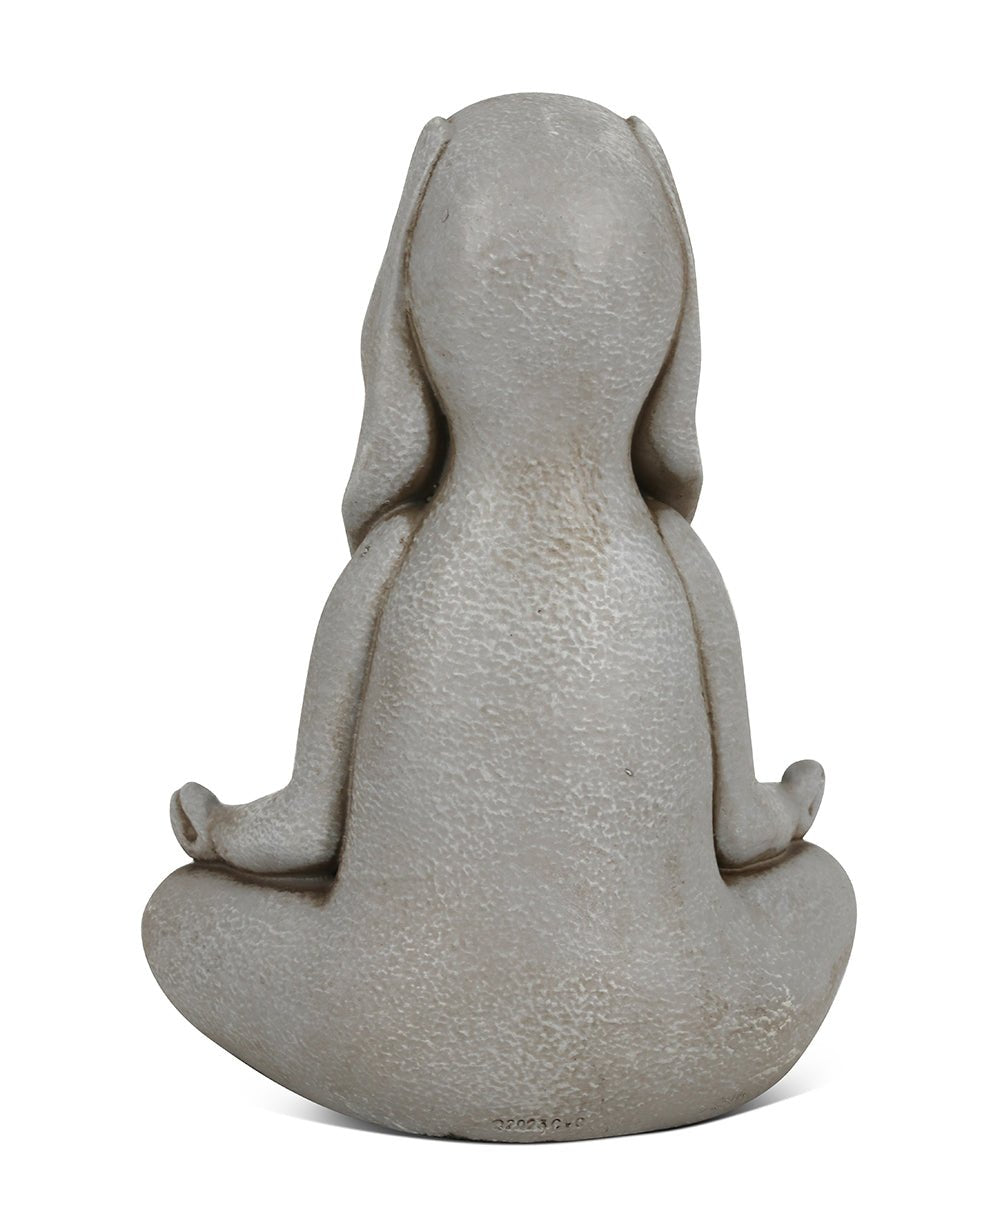 Adorable Small Meditating Bunny Statue - Sculptures & Statues